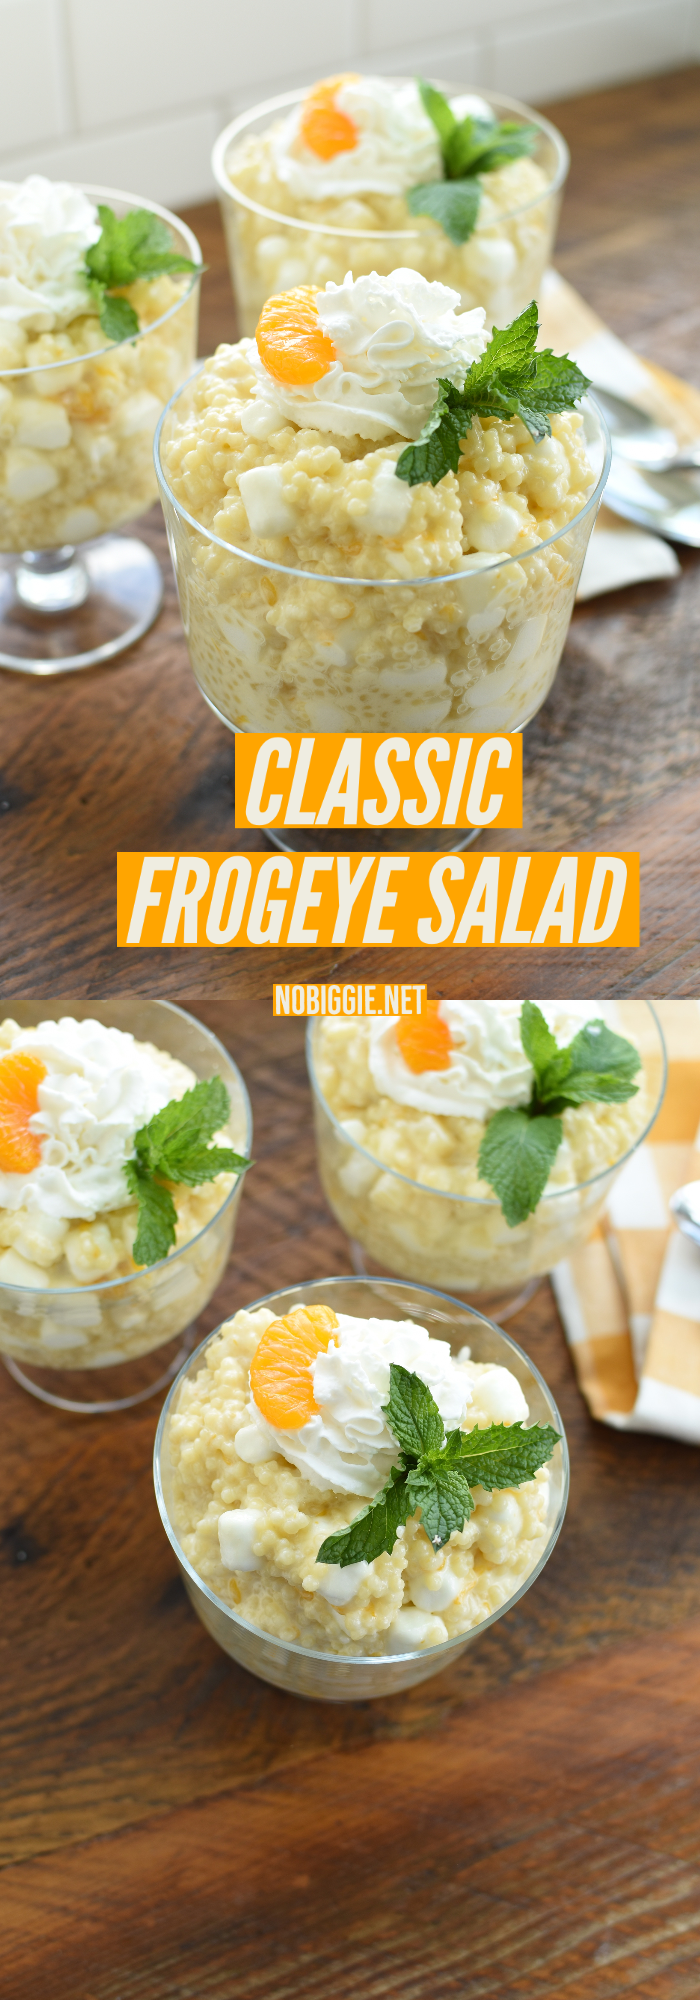 Frogeye salad | NoBiggie.net